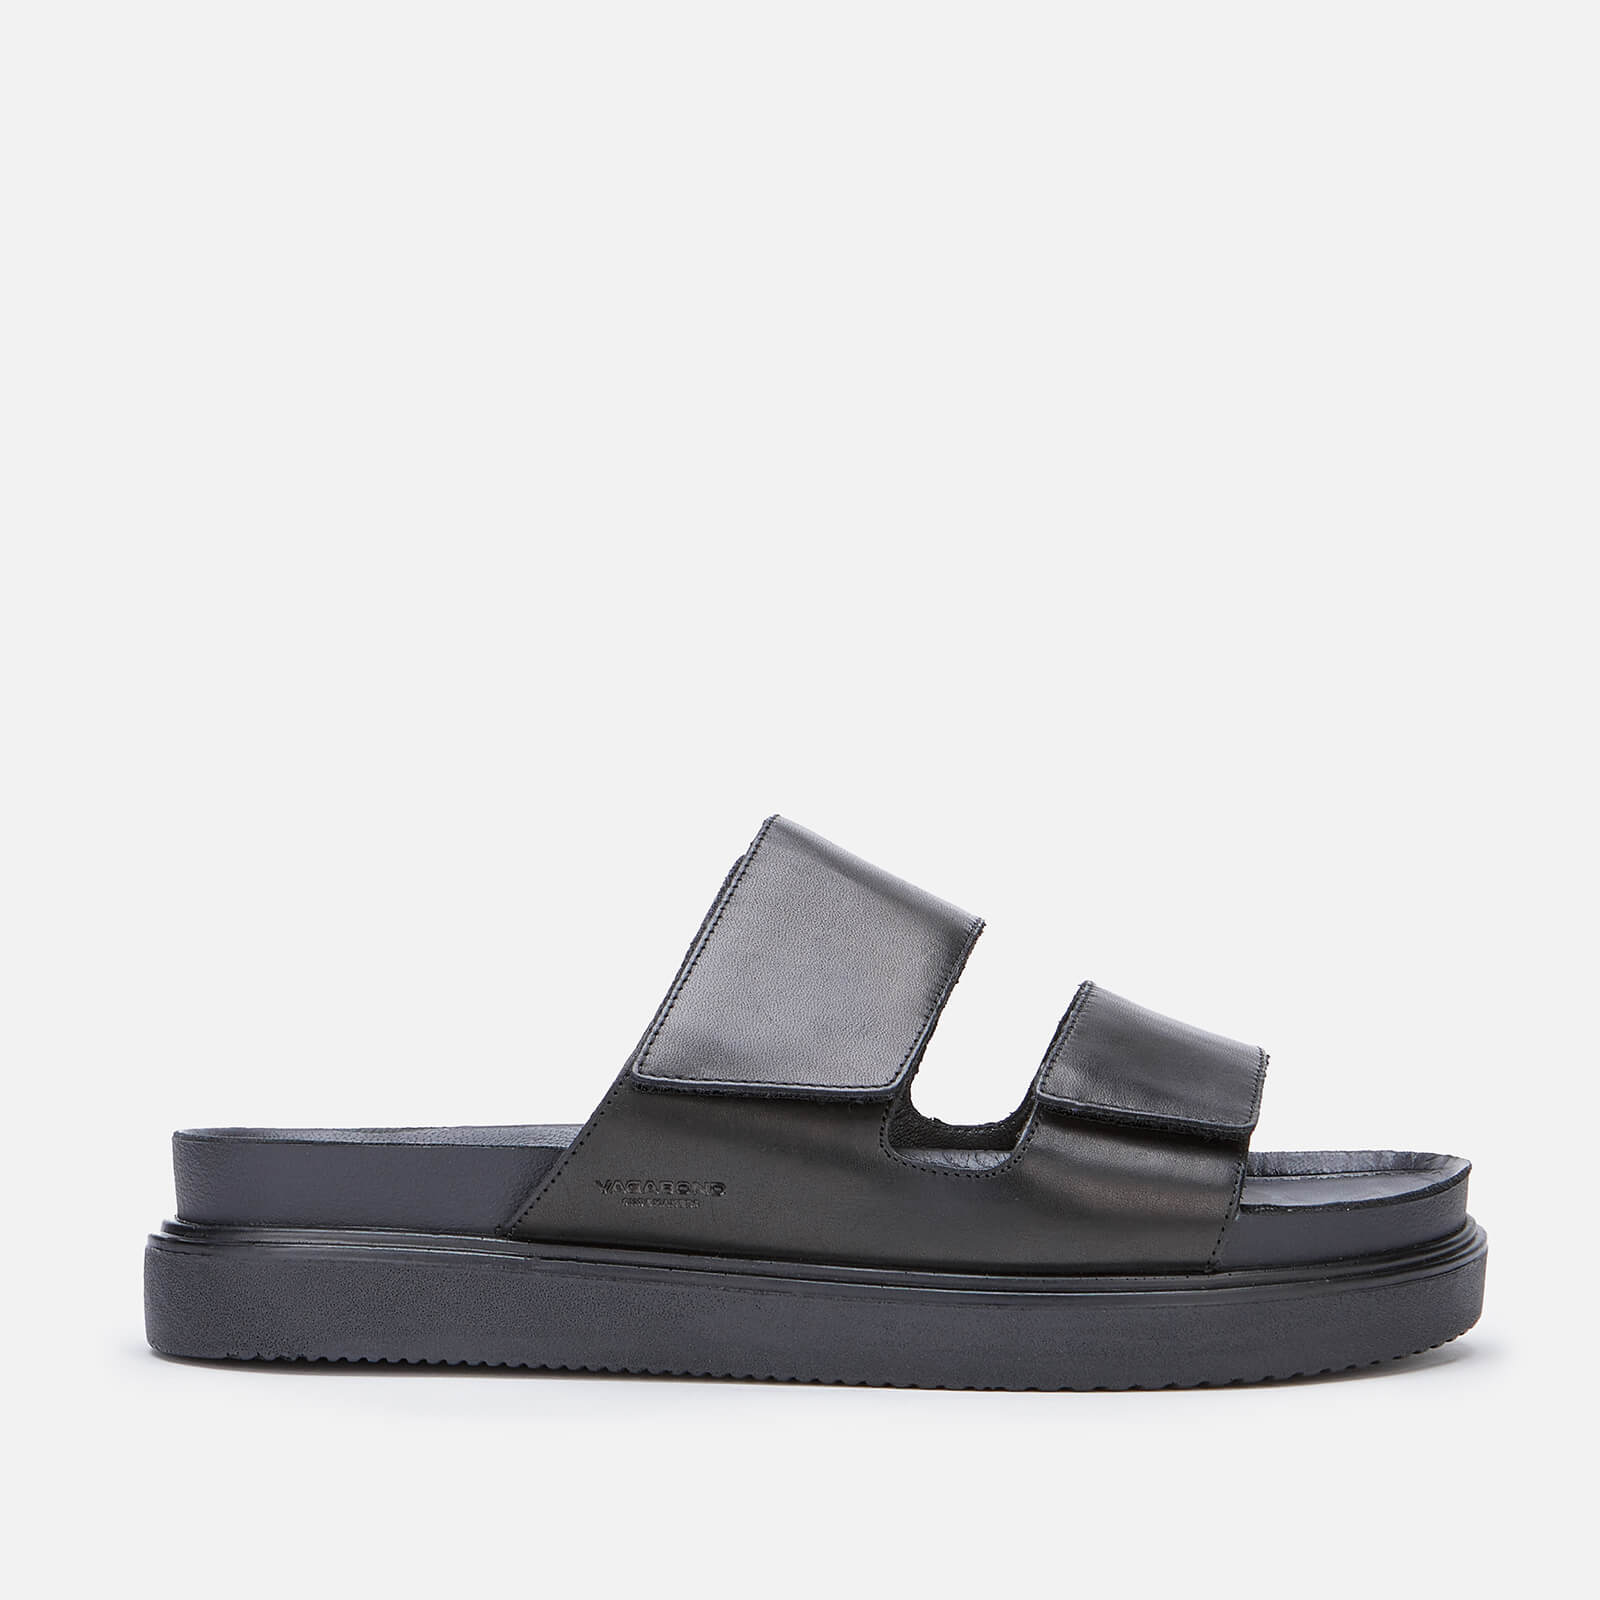 Vagabond Men's Seth Leather Double Strap Sandals - Black - UK 7